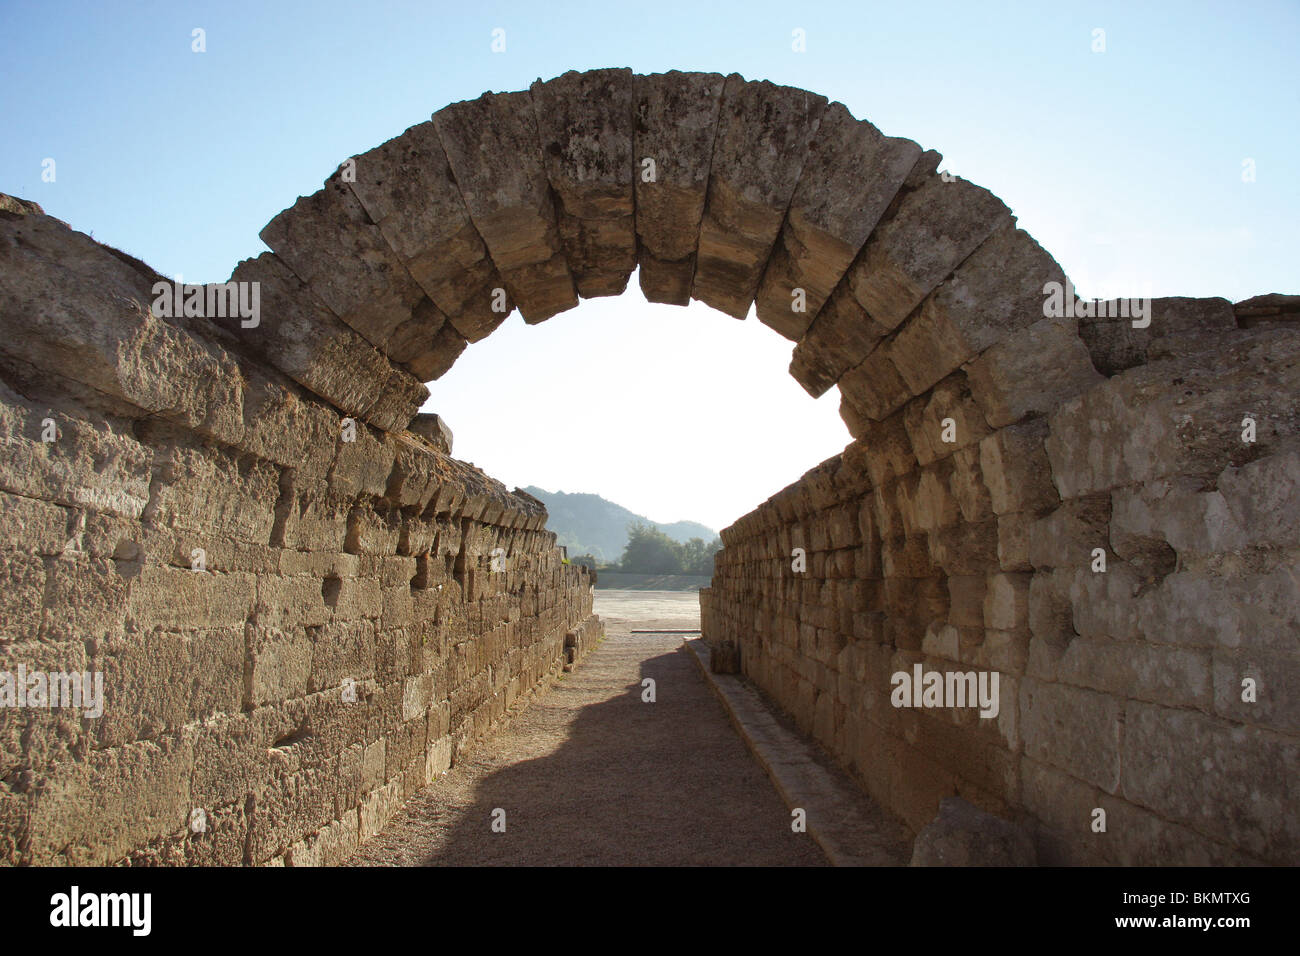 Santuario de Olimpia. La entrada al estadio olímpico. Arco de piedra. III A.C. Elis. Peloponesse. Grecia. Foto de stock